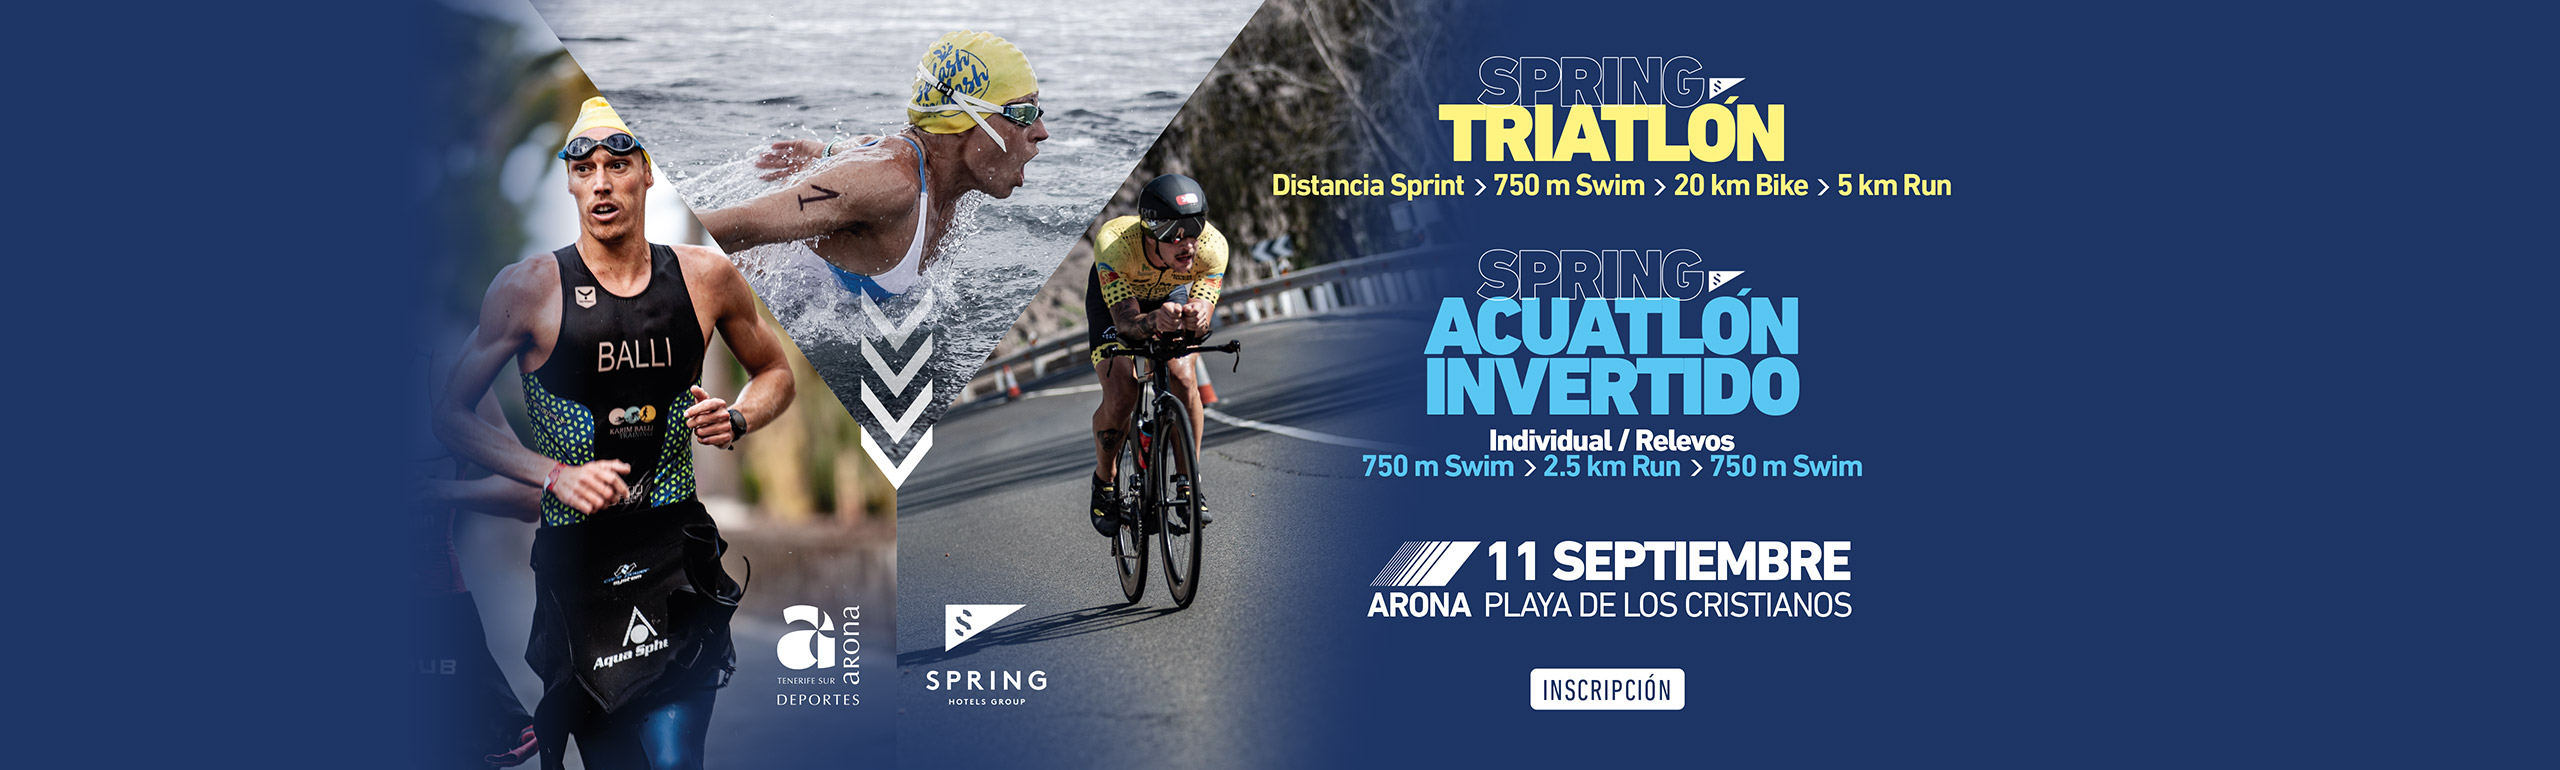 Triatlon y Acuatlon invertido Spring Hotels